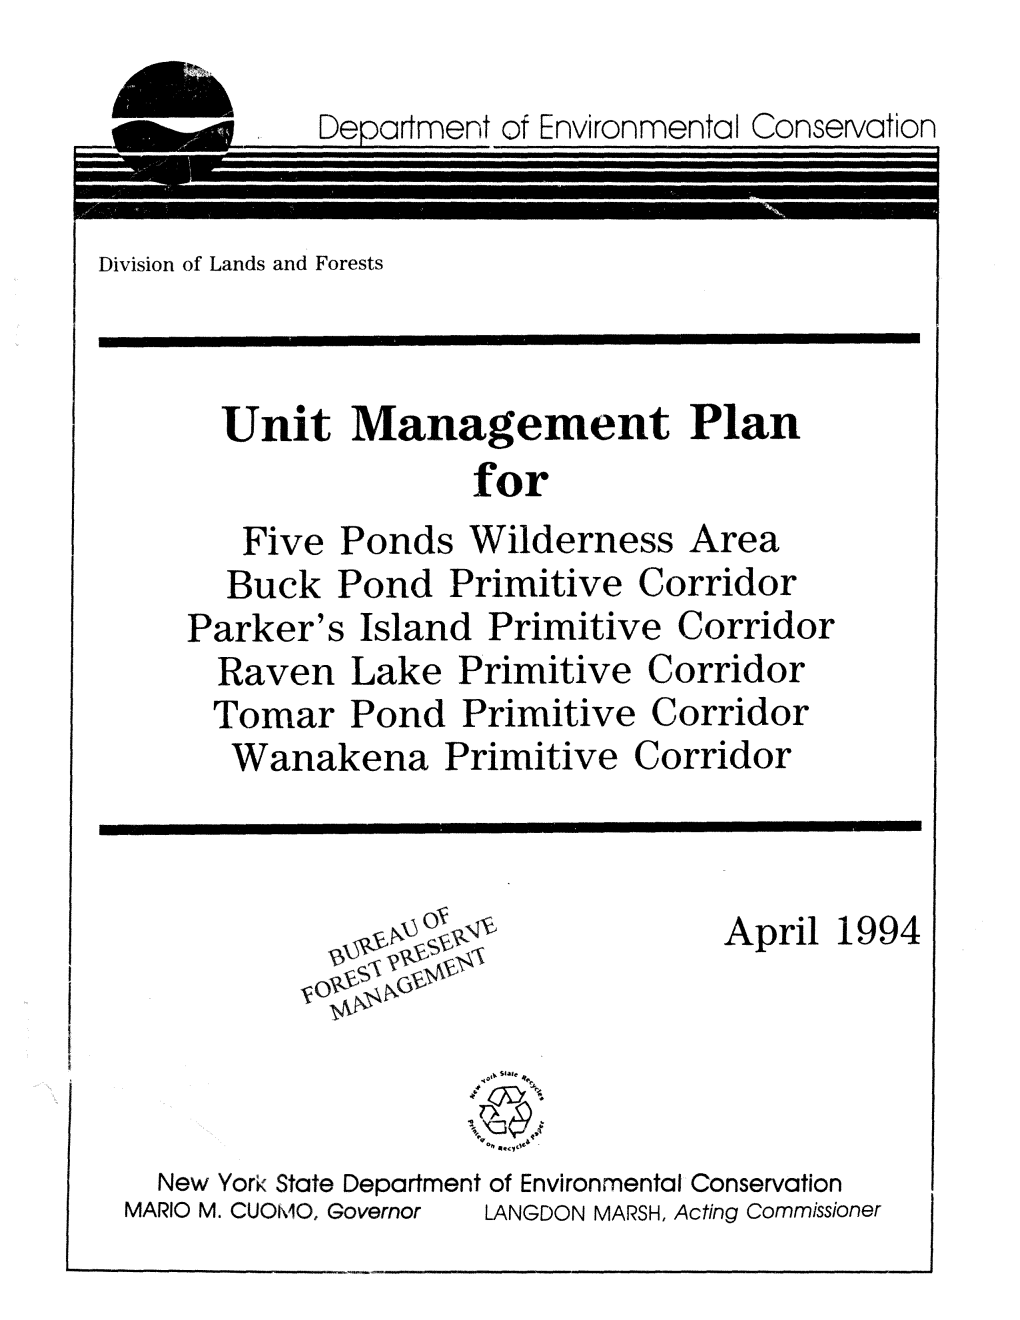 Five Ponds Wilderness Area Unit Management Plan